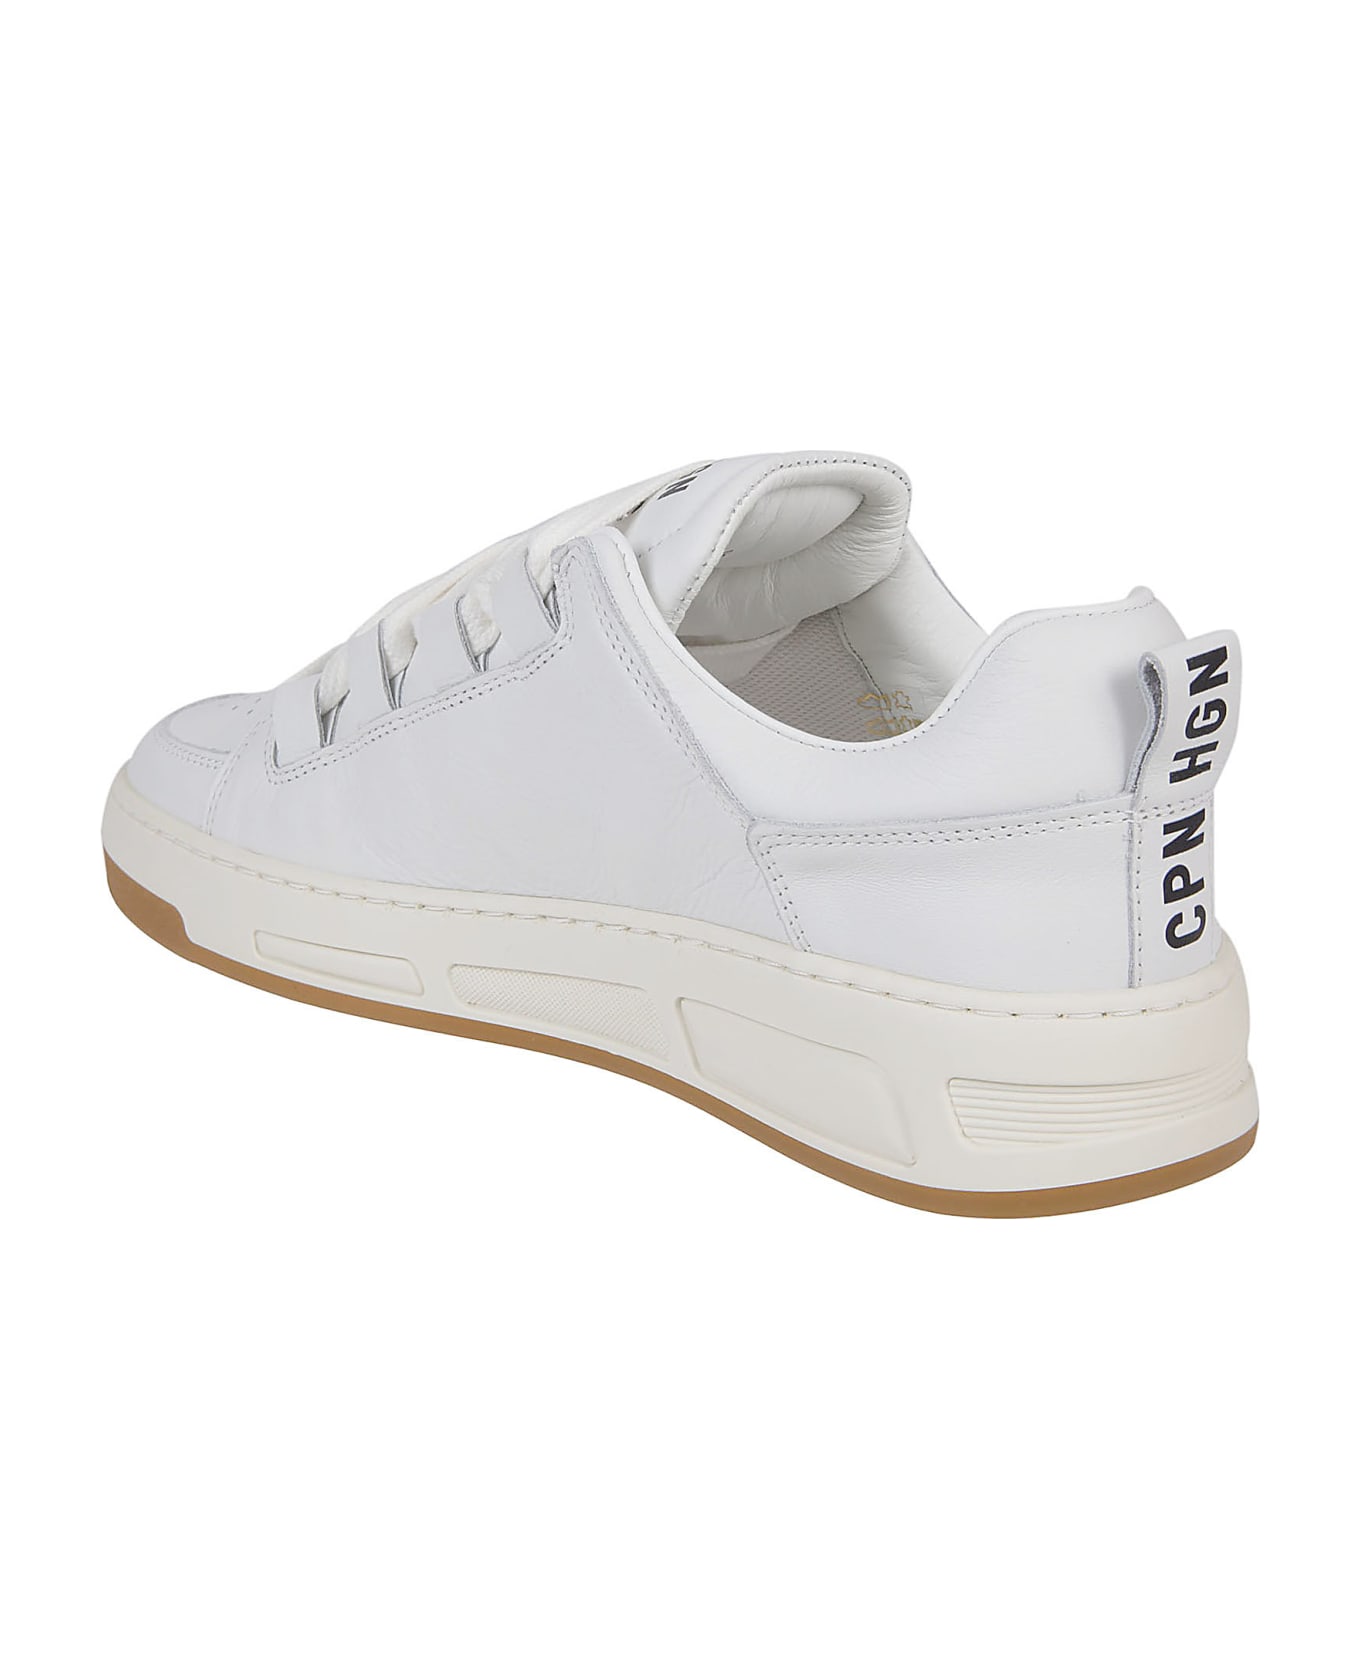 Copenhagen Studios Flat Premium Shoes White - White